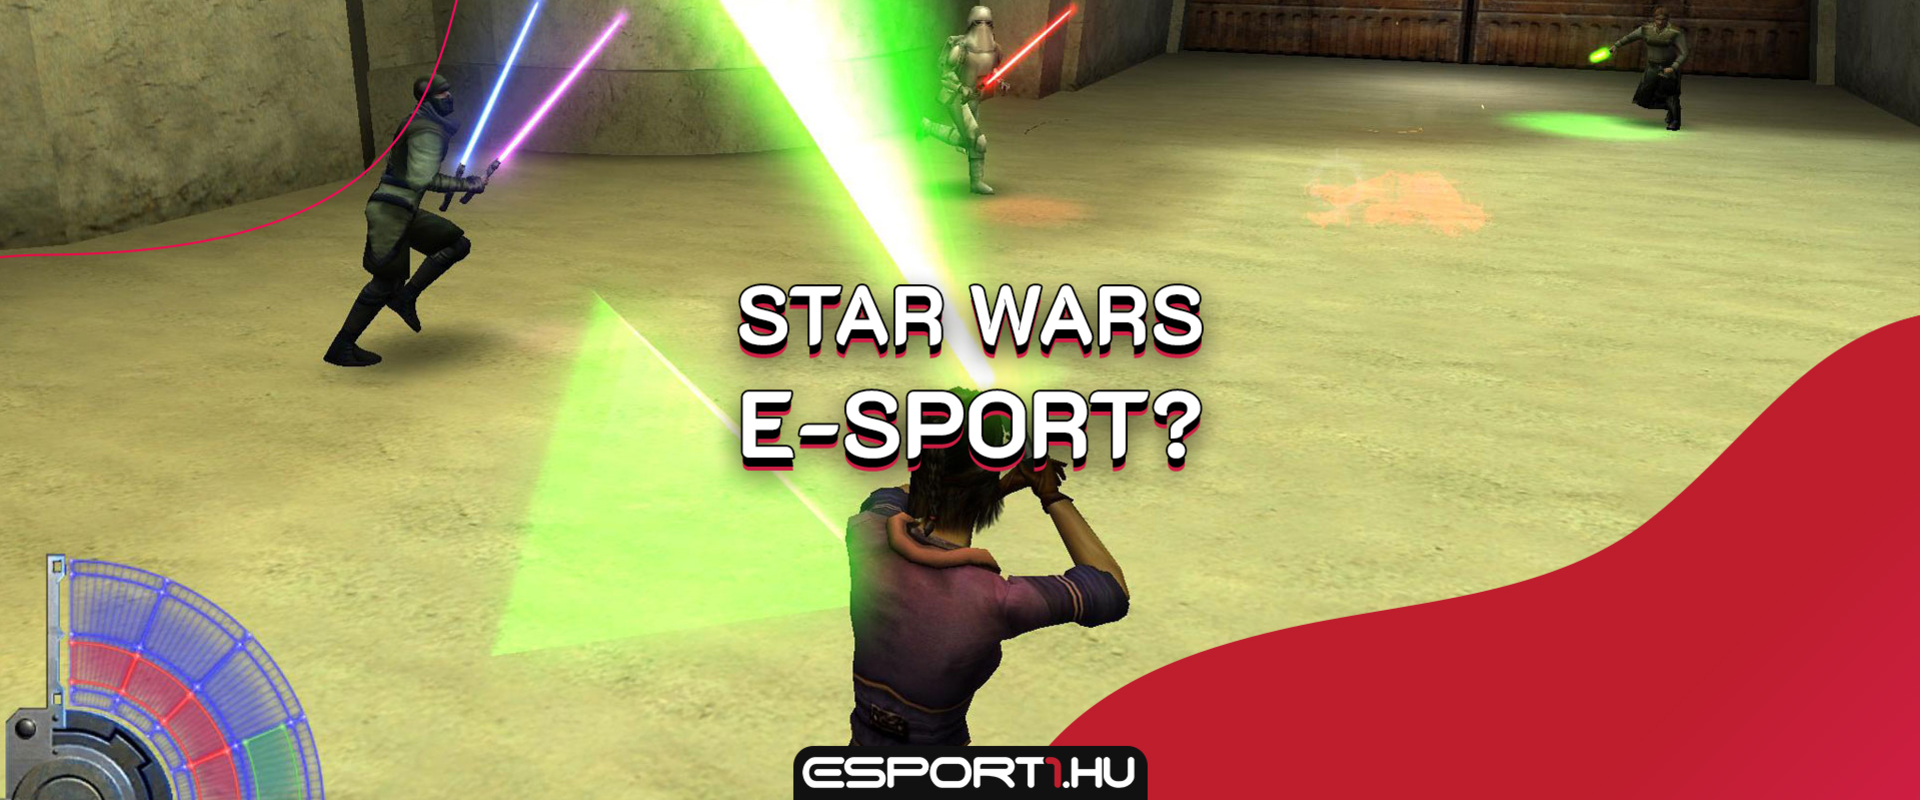 Star Wars mint E-sport? Miért is ne?